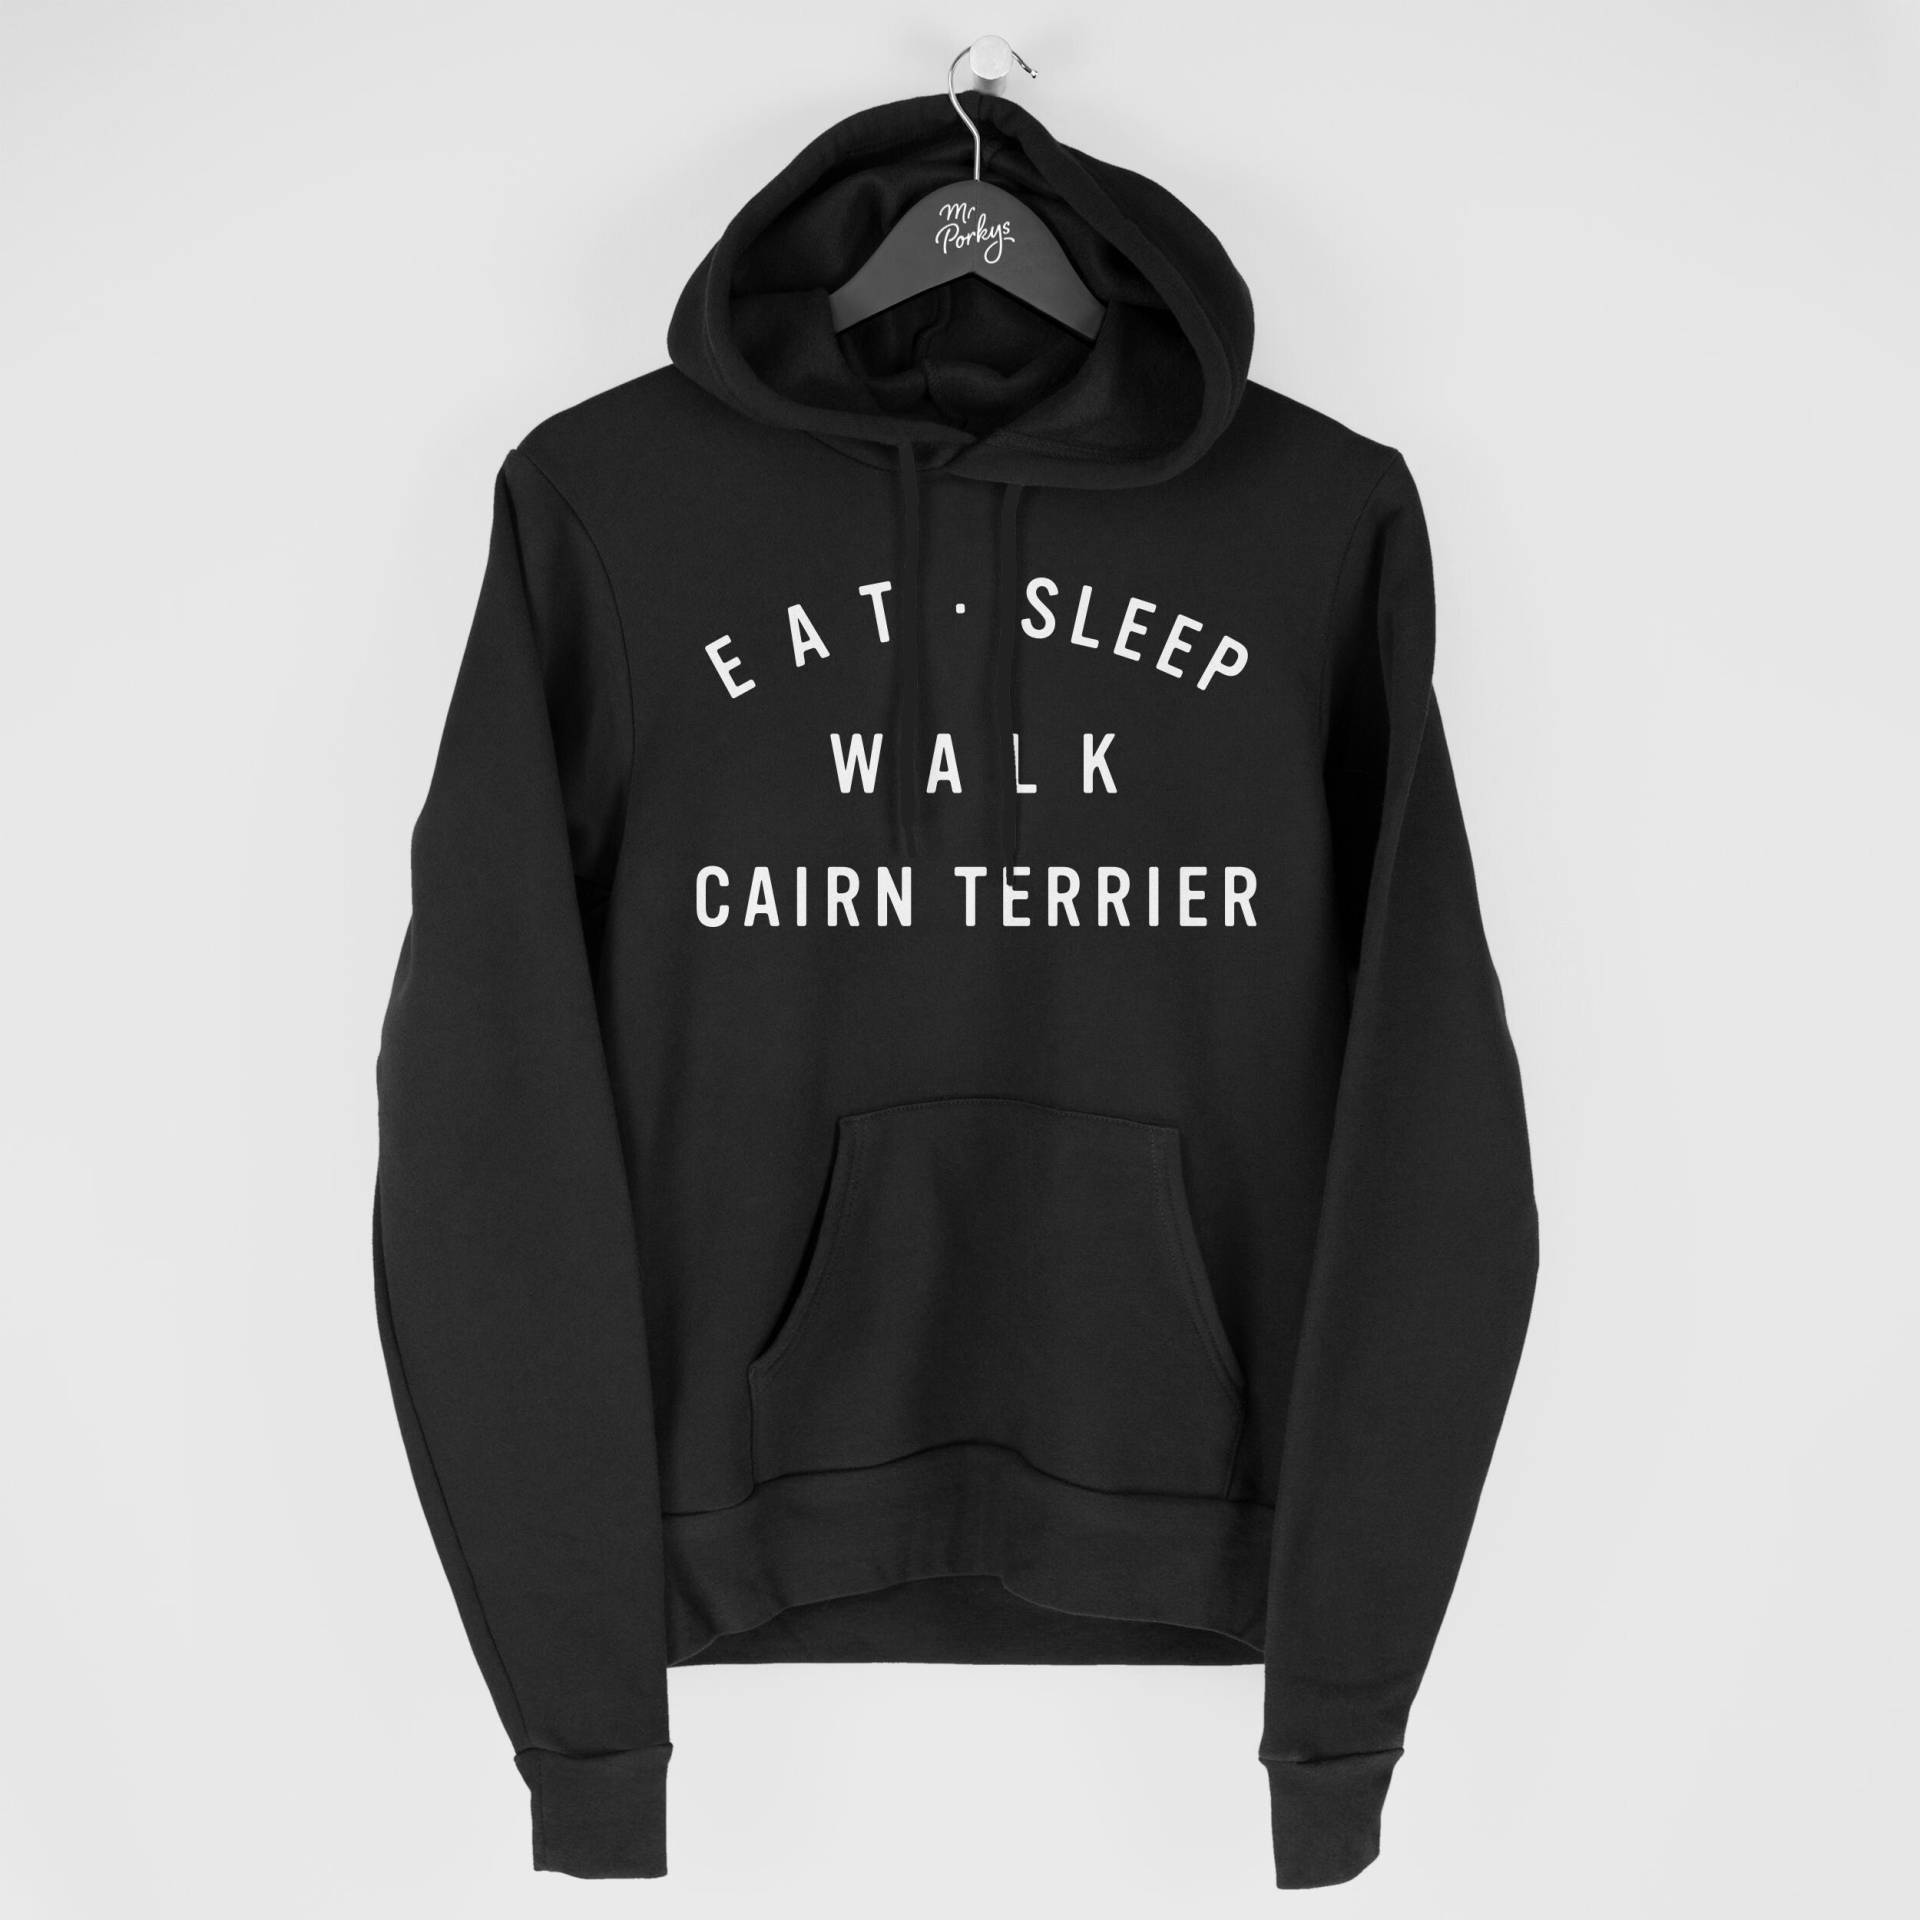 Cairn Terrier Hoodie, Eat Sleep Walk Geschenk Für Besitzer, Hoody von MrPorkysGiftShop